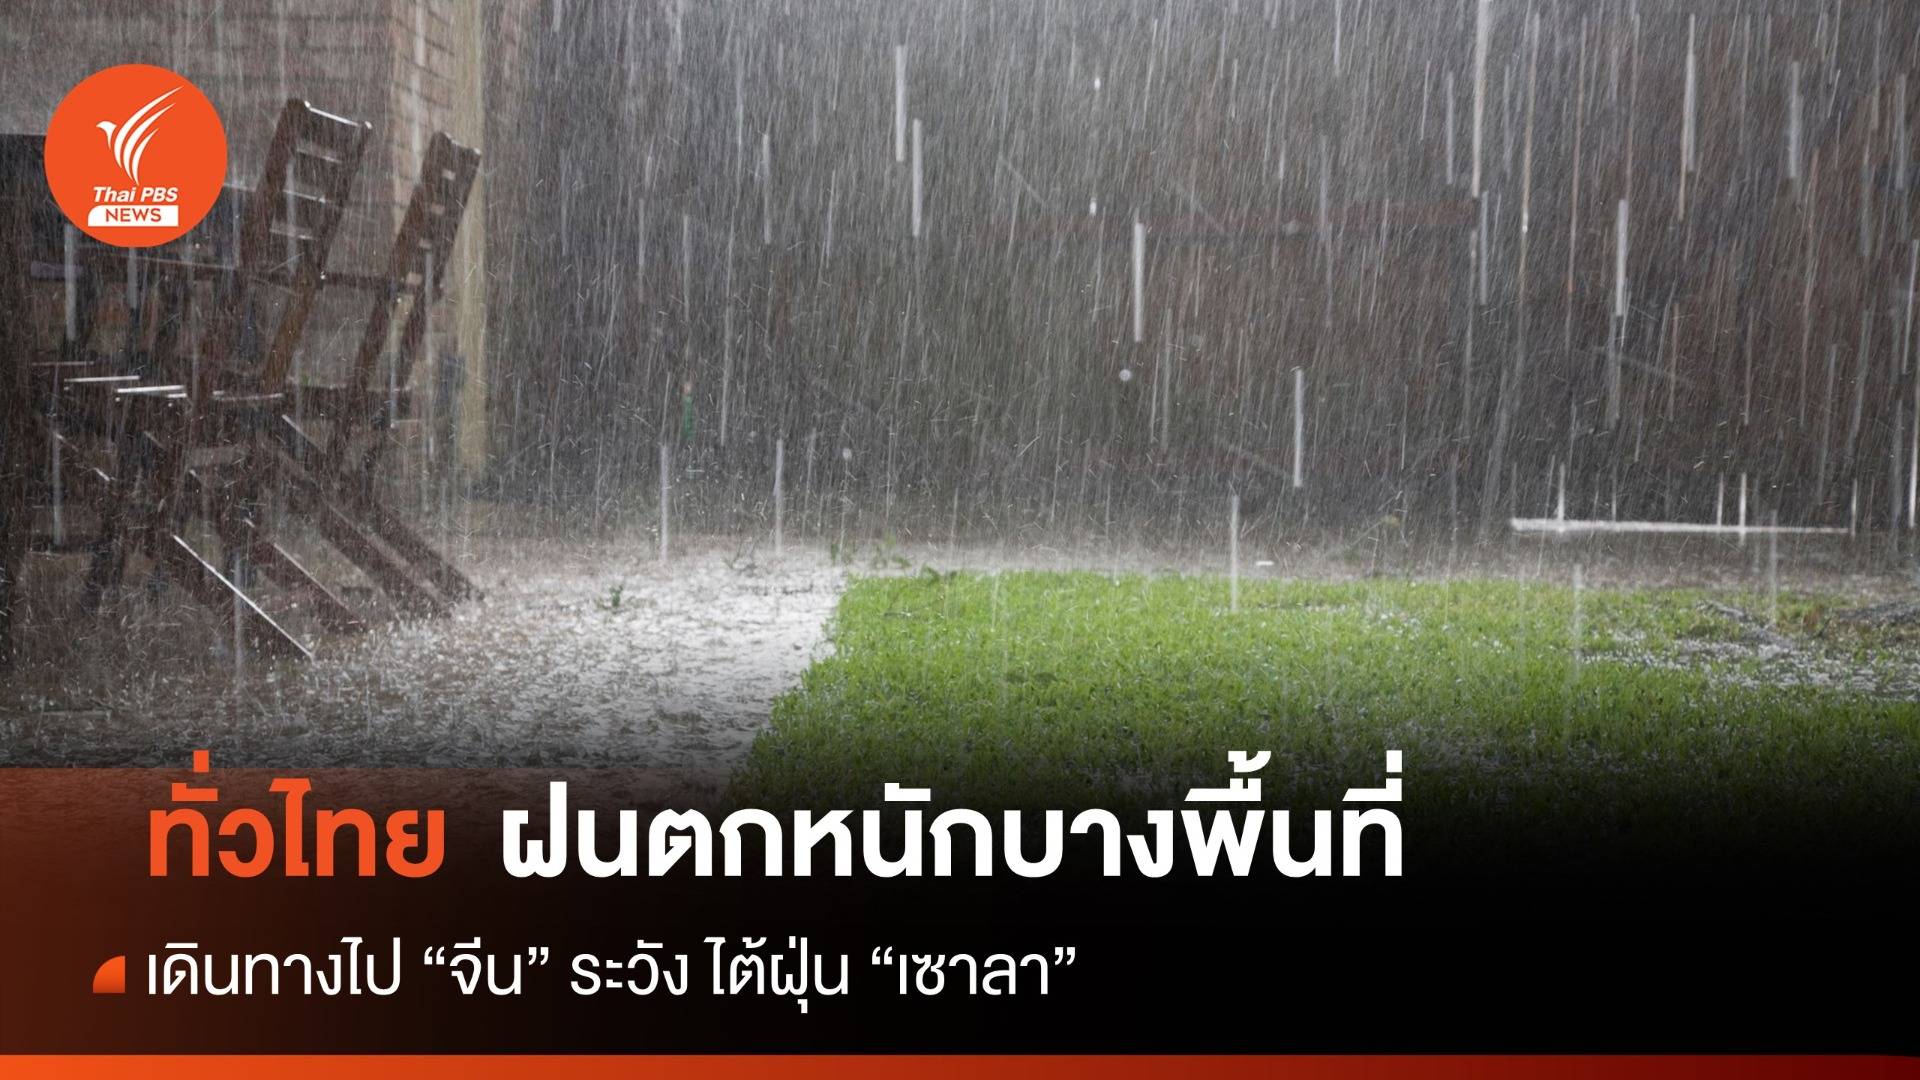 สภาพอากาศวันนี้ ทั่วไทยยังเจอฝนตกหนักในบางพื้นที่